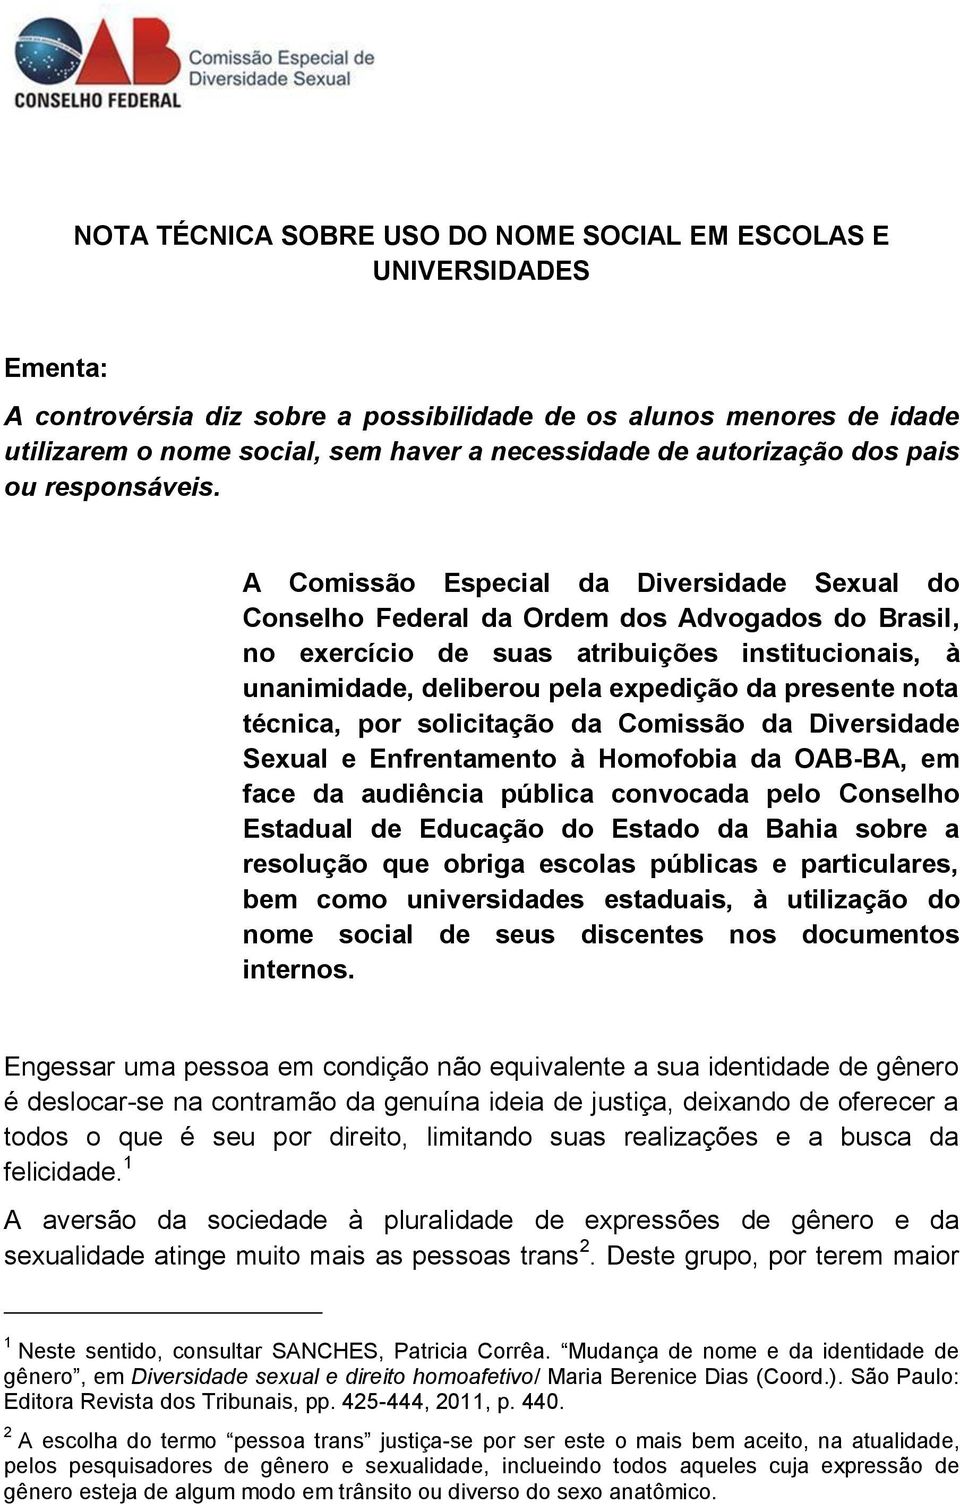 A Comissão Especial da Diversidade Sexual do Conselho Federal da Ordem dos Advogados do Brasil, no exercício de suas atribuições institucionais, à unanimidade, deliberou pela expedição da presente